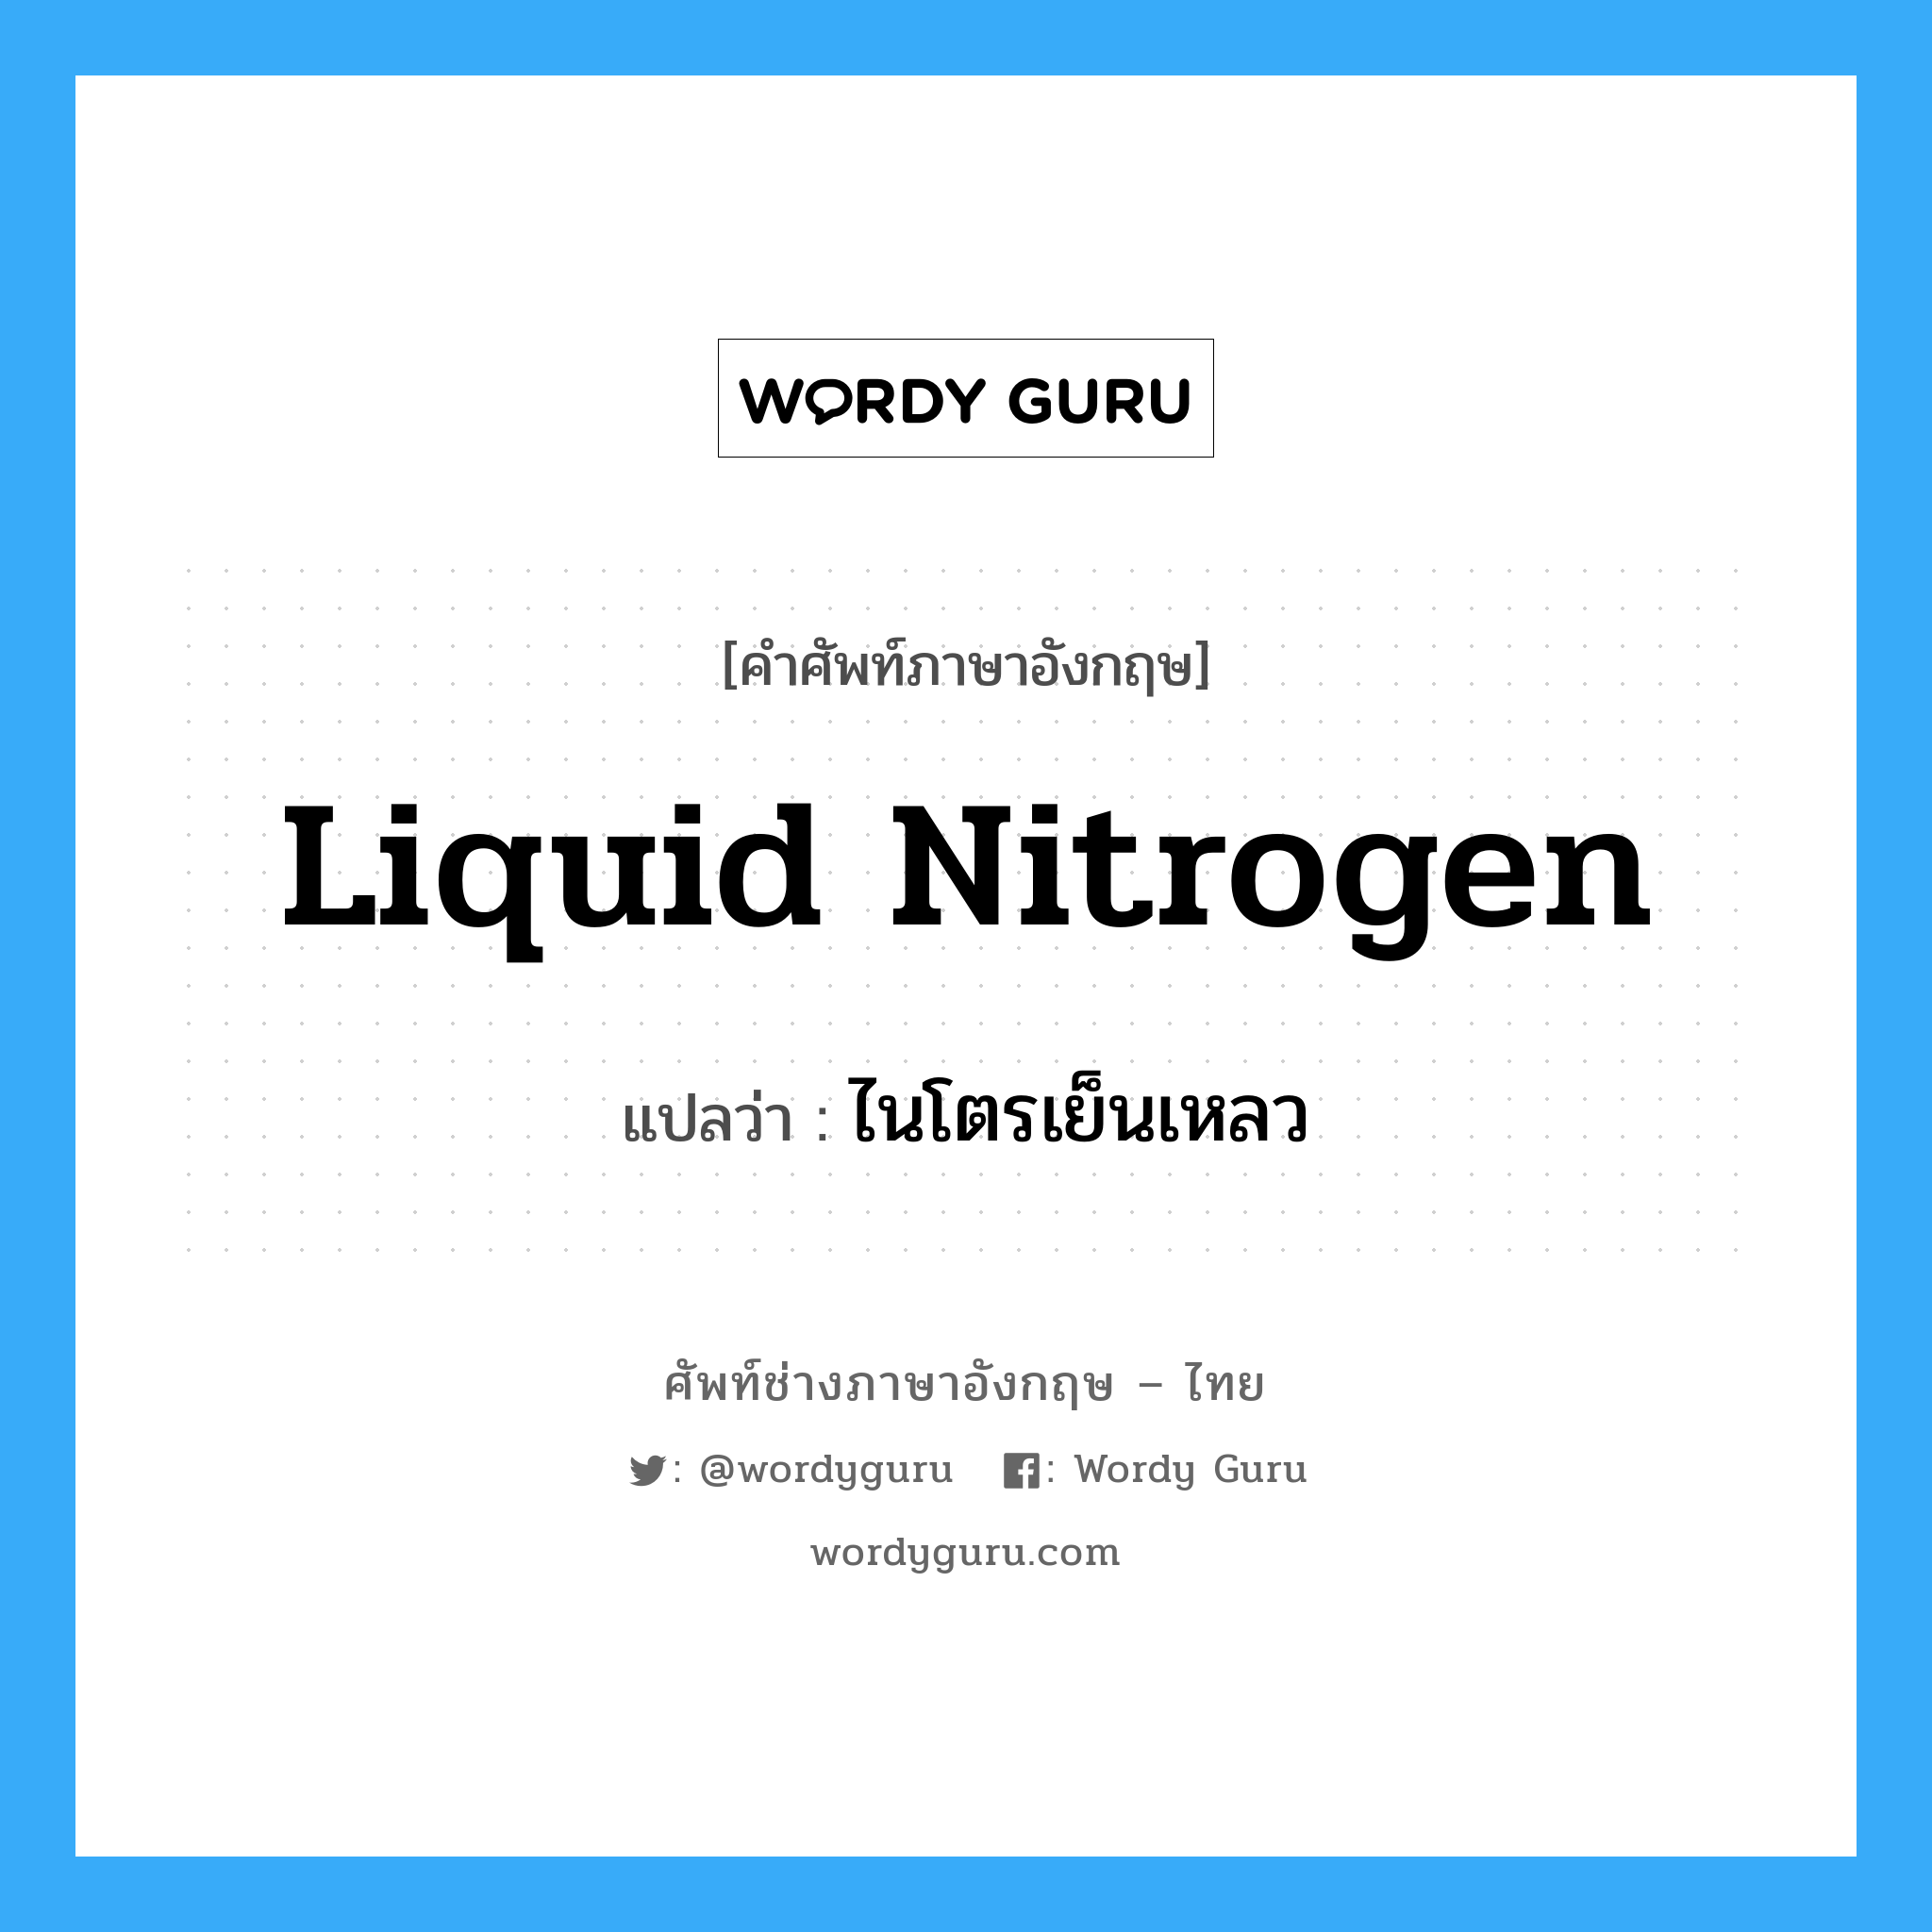 liquid nitrogen แปลว่า?, คำศัพท์ช่างภาษาอังกฤษ - ไทย liquid nitrogen คำศัพท์ภาษาอังกฤษ liquid nitrogen แปลว่า ไนโตรเย็นเหลว